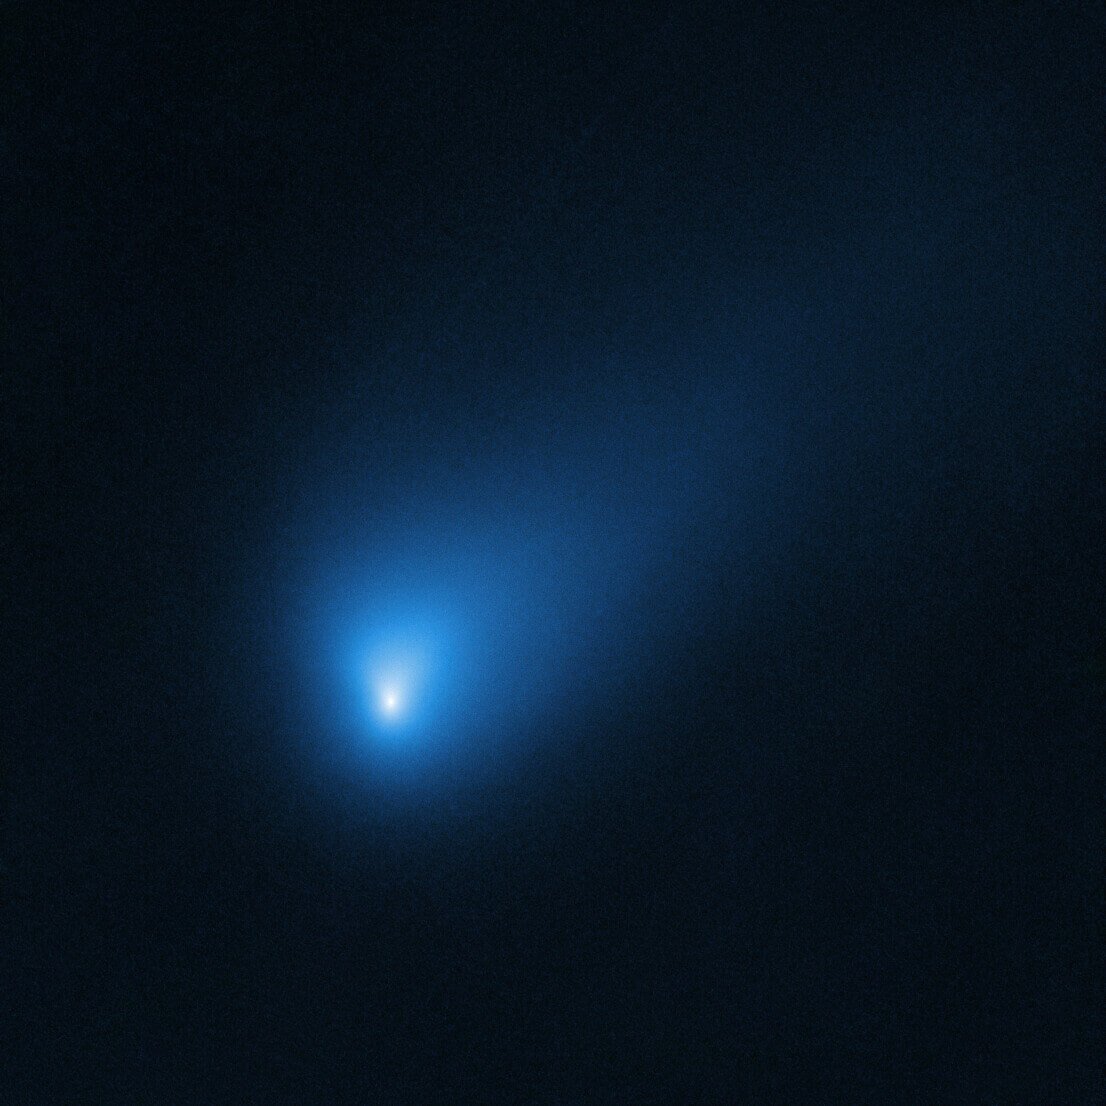 「ハッブル」宇宙望遠鏡が2019年10月12日に撮影した「ボリソフ彗星」（Credit: NASA, ESA, D. Jewitt (UCLA)）